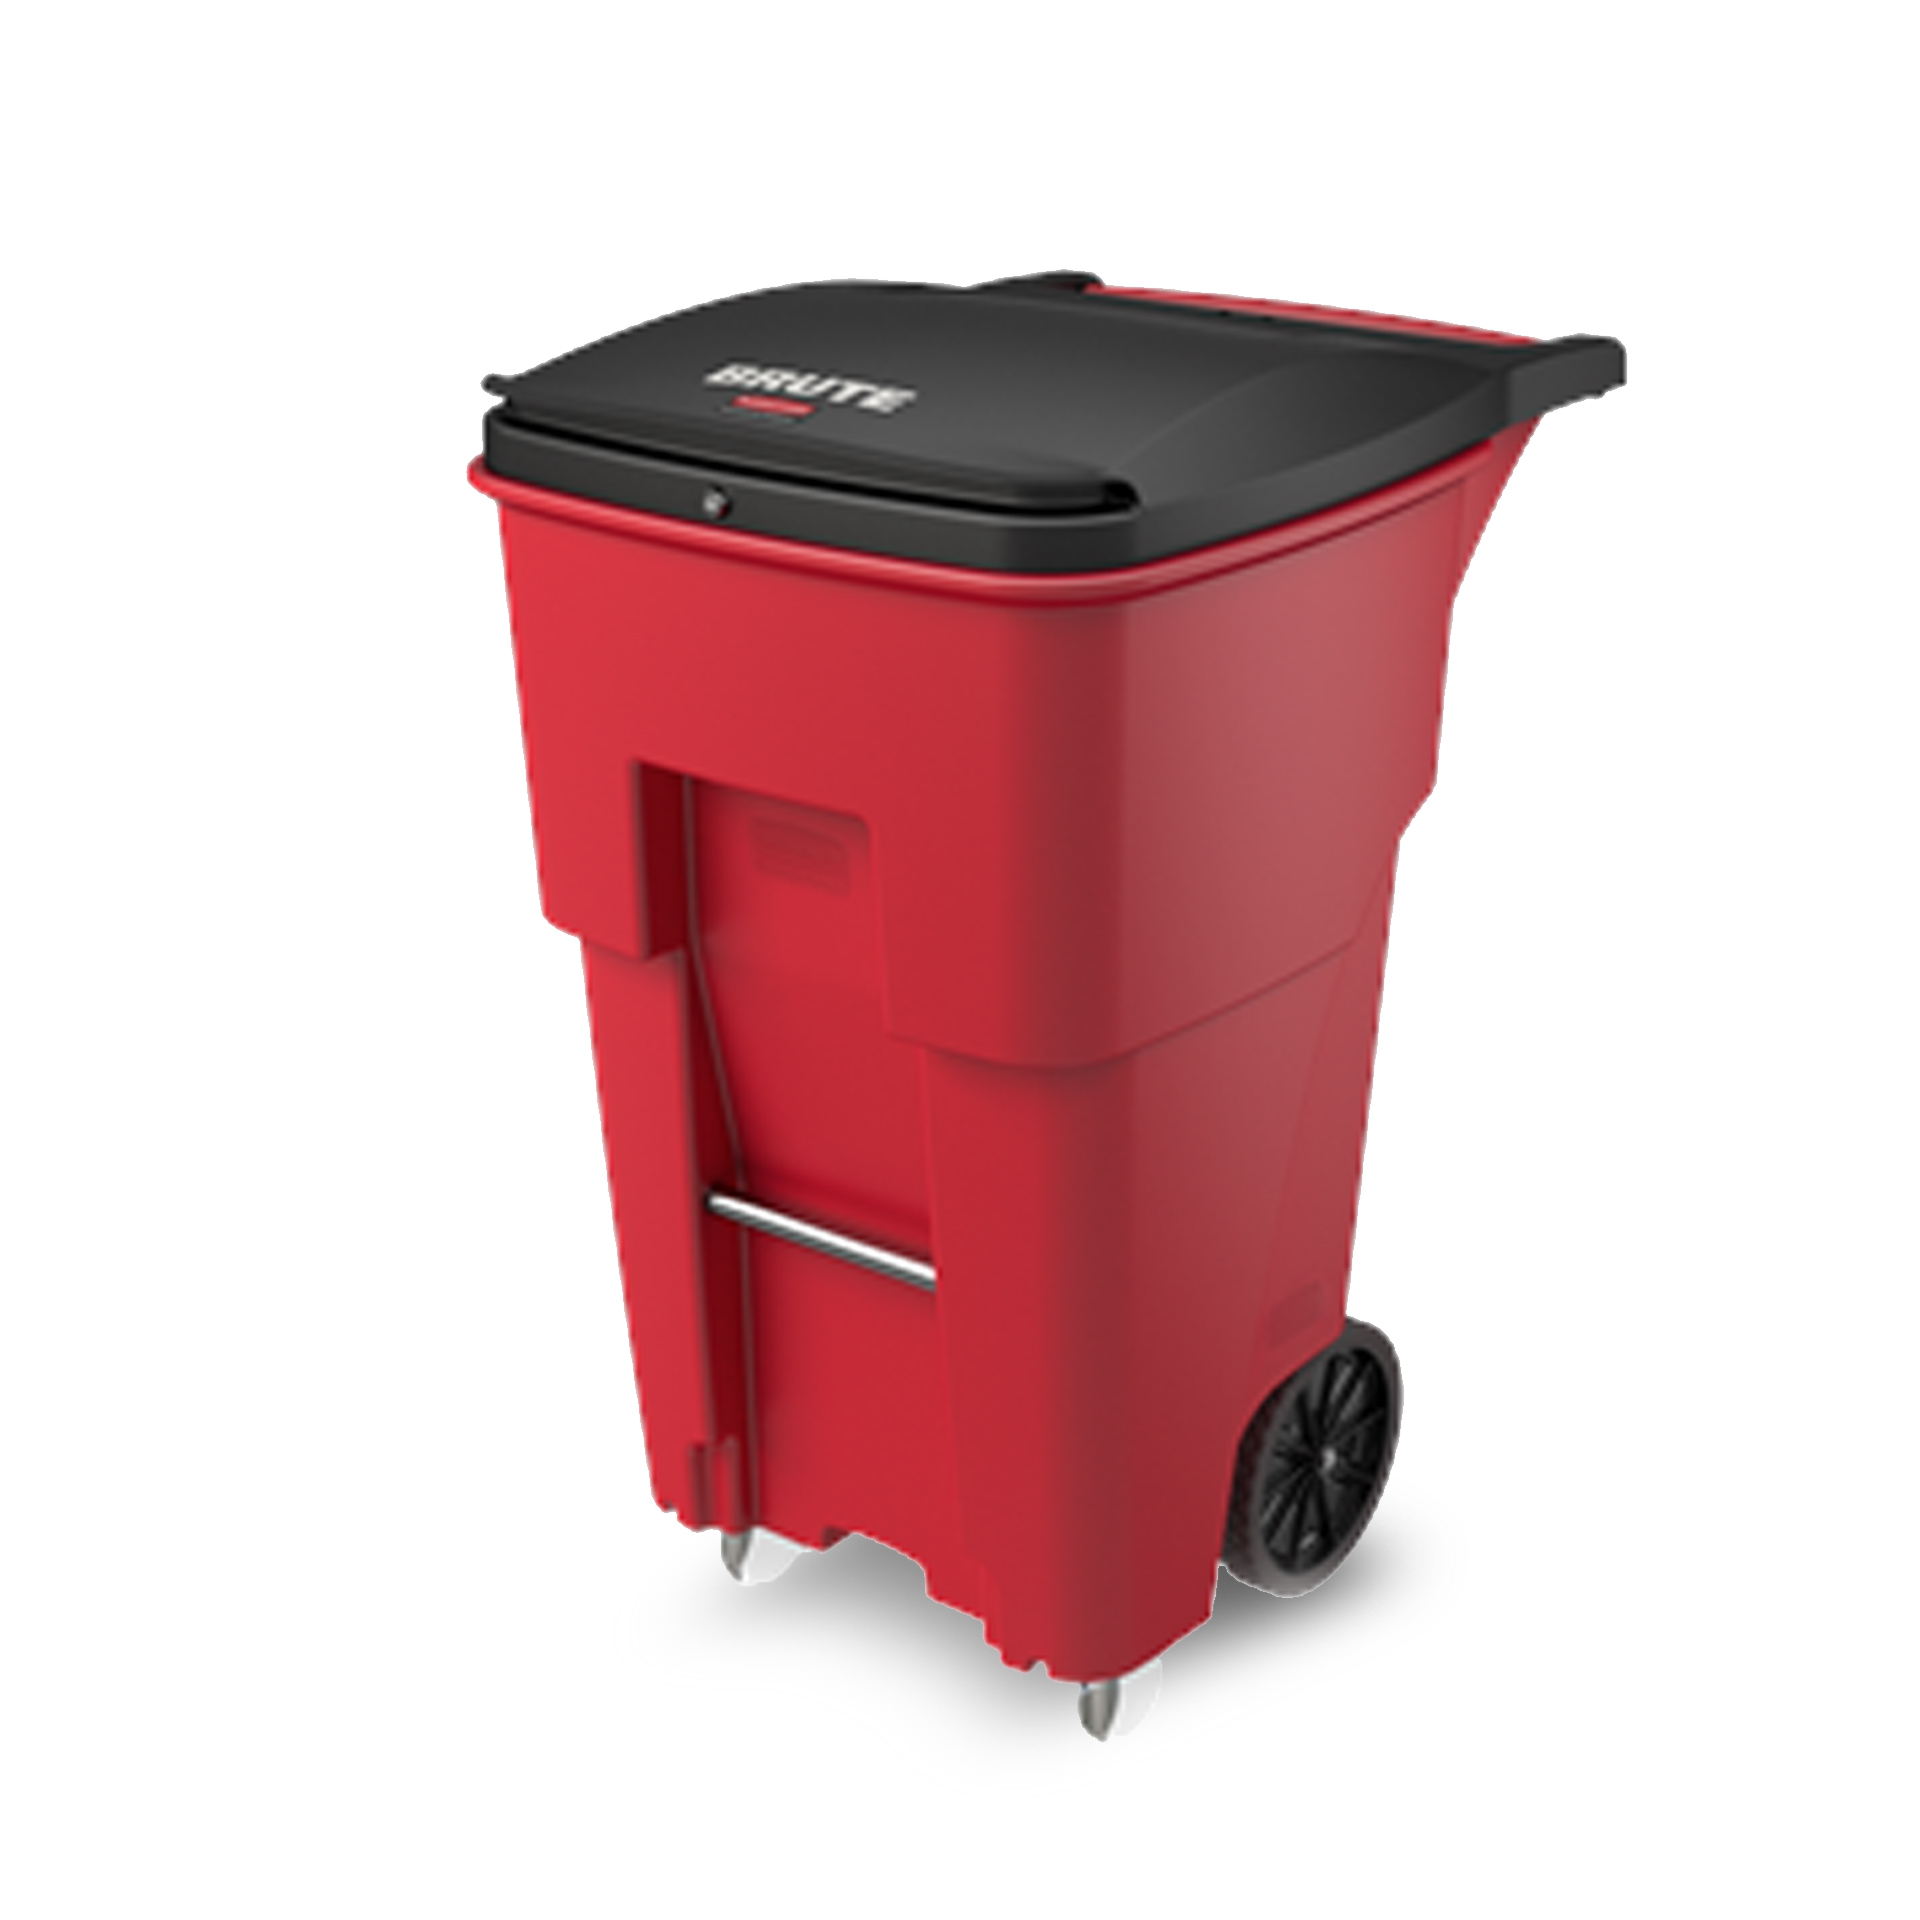 ถังขยะสำหรับขยะติดเชื้อ Rubbermaid 4 ล้อ ขนาด 246 ลิตร สีแดง